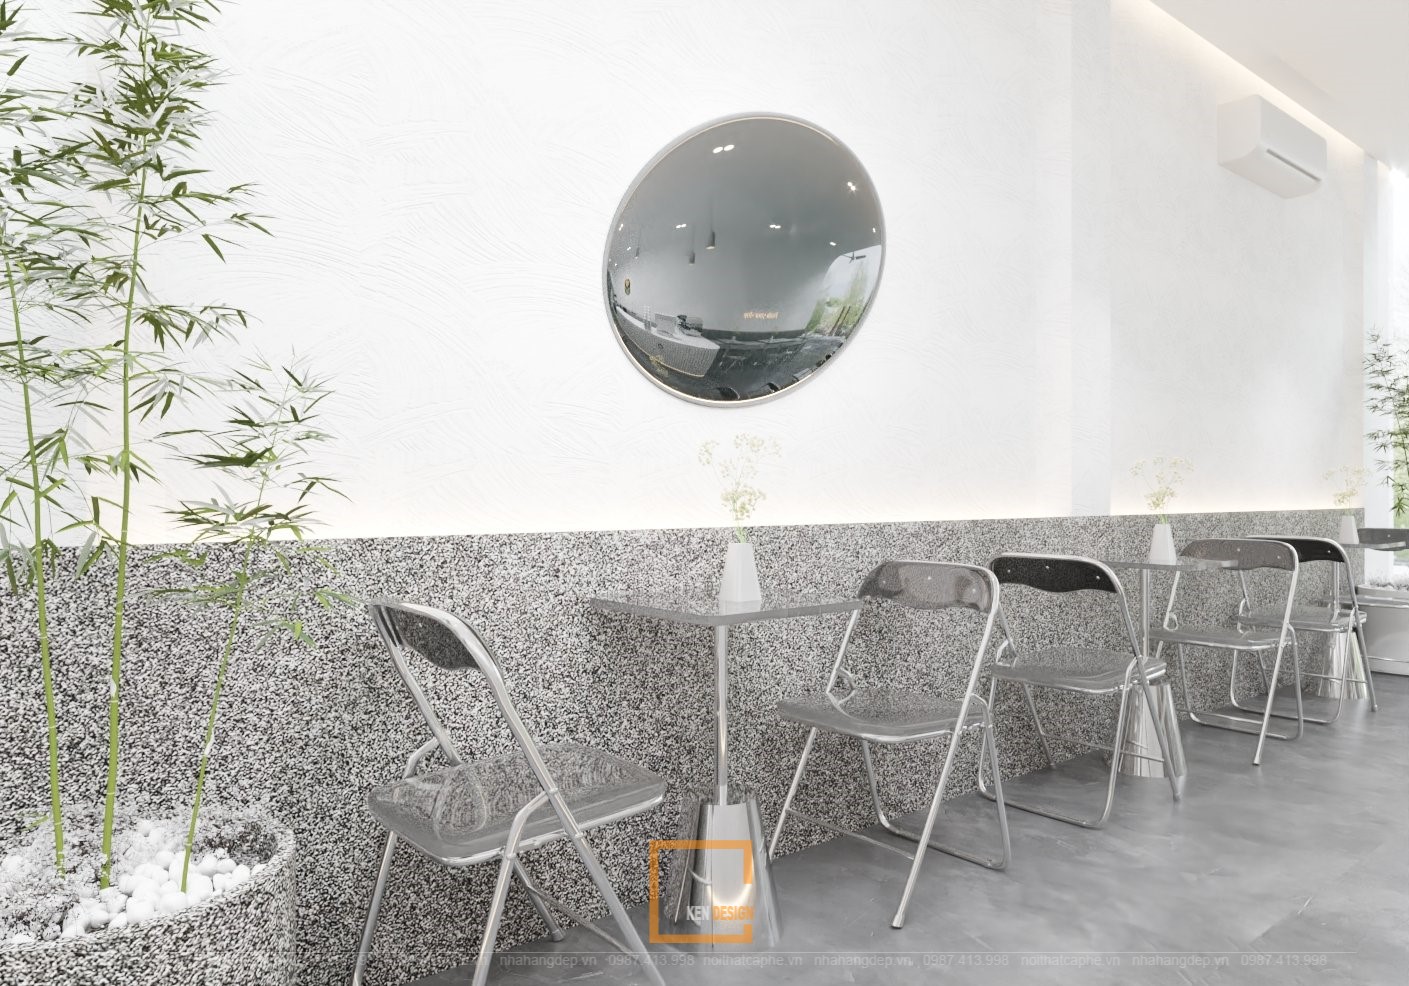 quán cafe phong cách minimalism